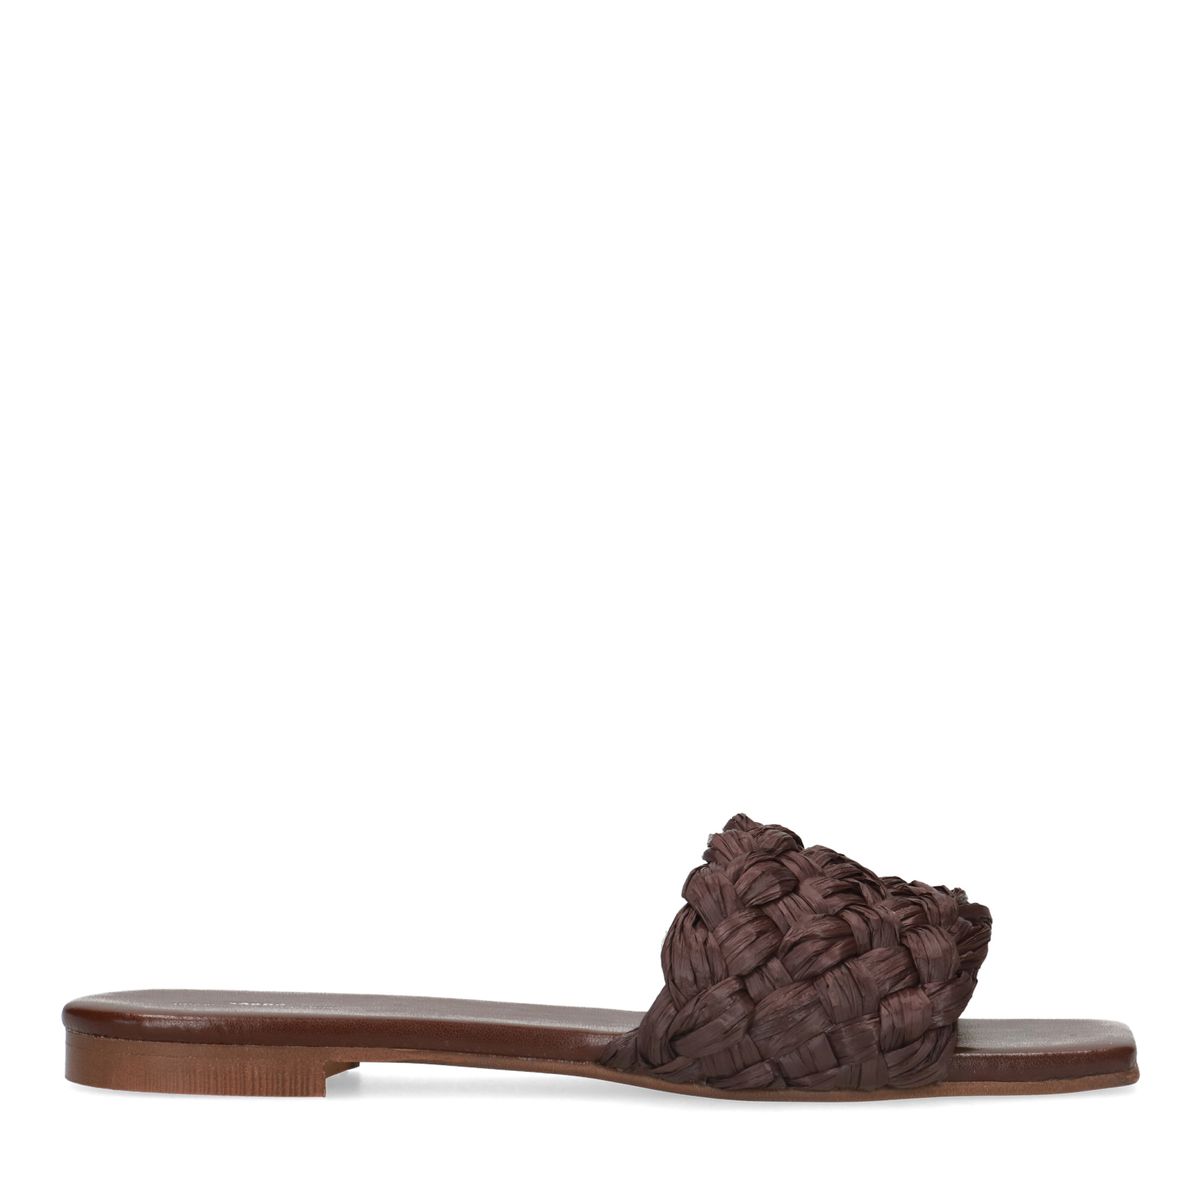 oriëntatie Bijdrage Gymnastiek Dark brown braided reed slippers (Size 42) - Sacha | StyleSearch